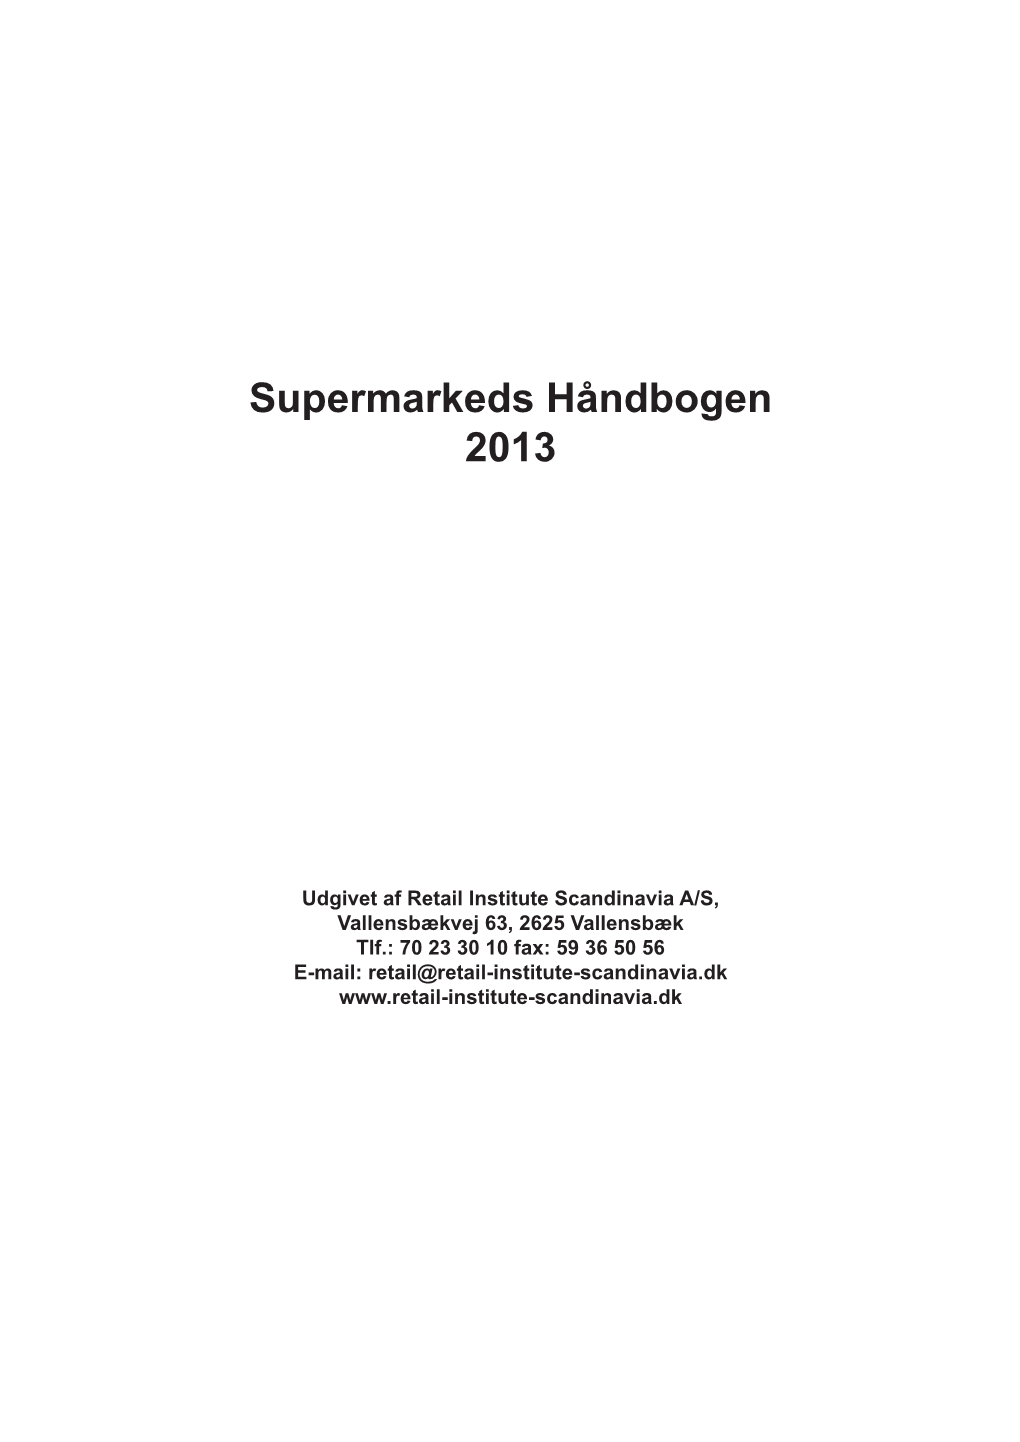 Supermarkeds Håndbogen 2013